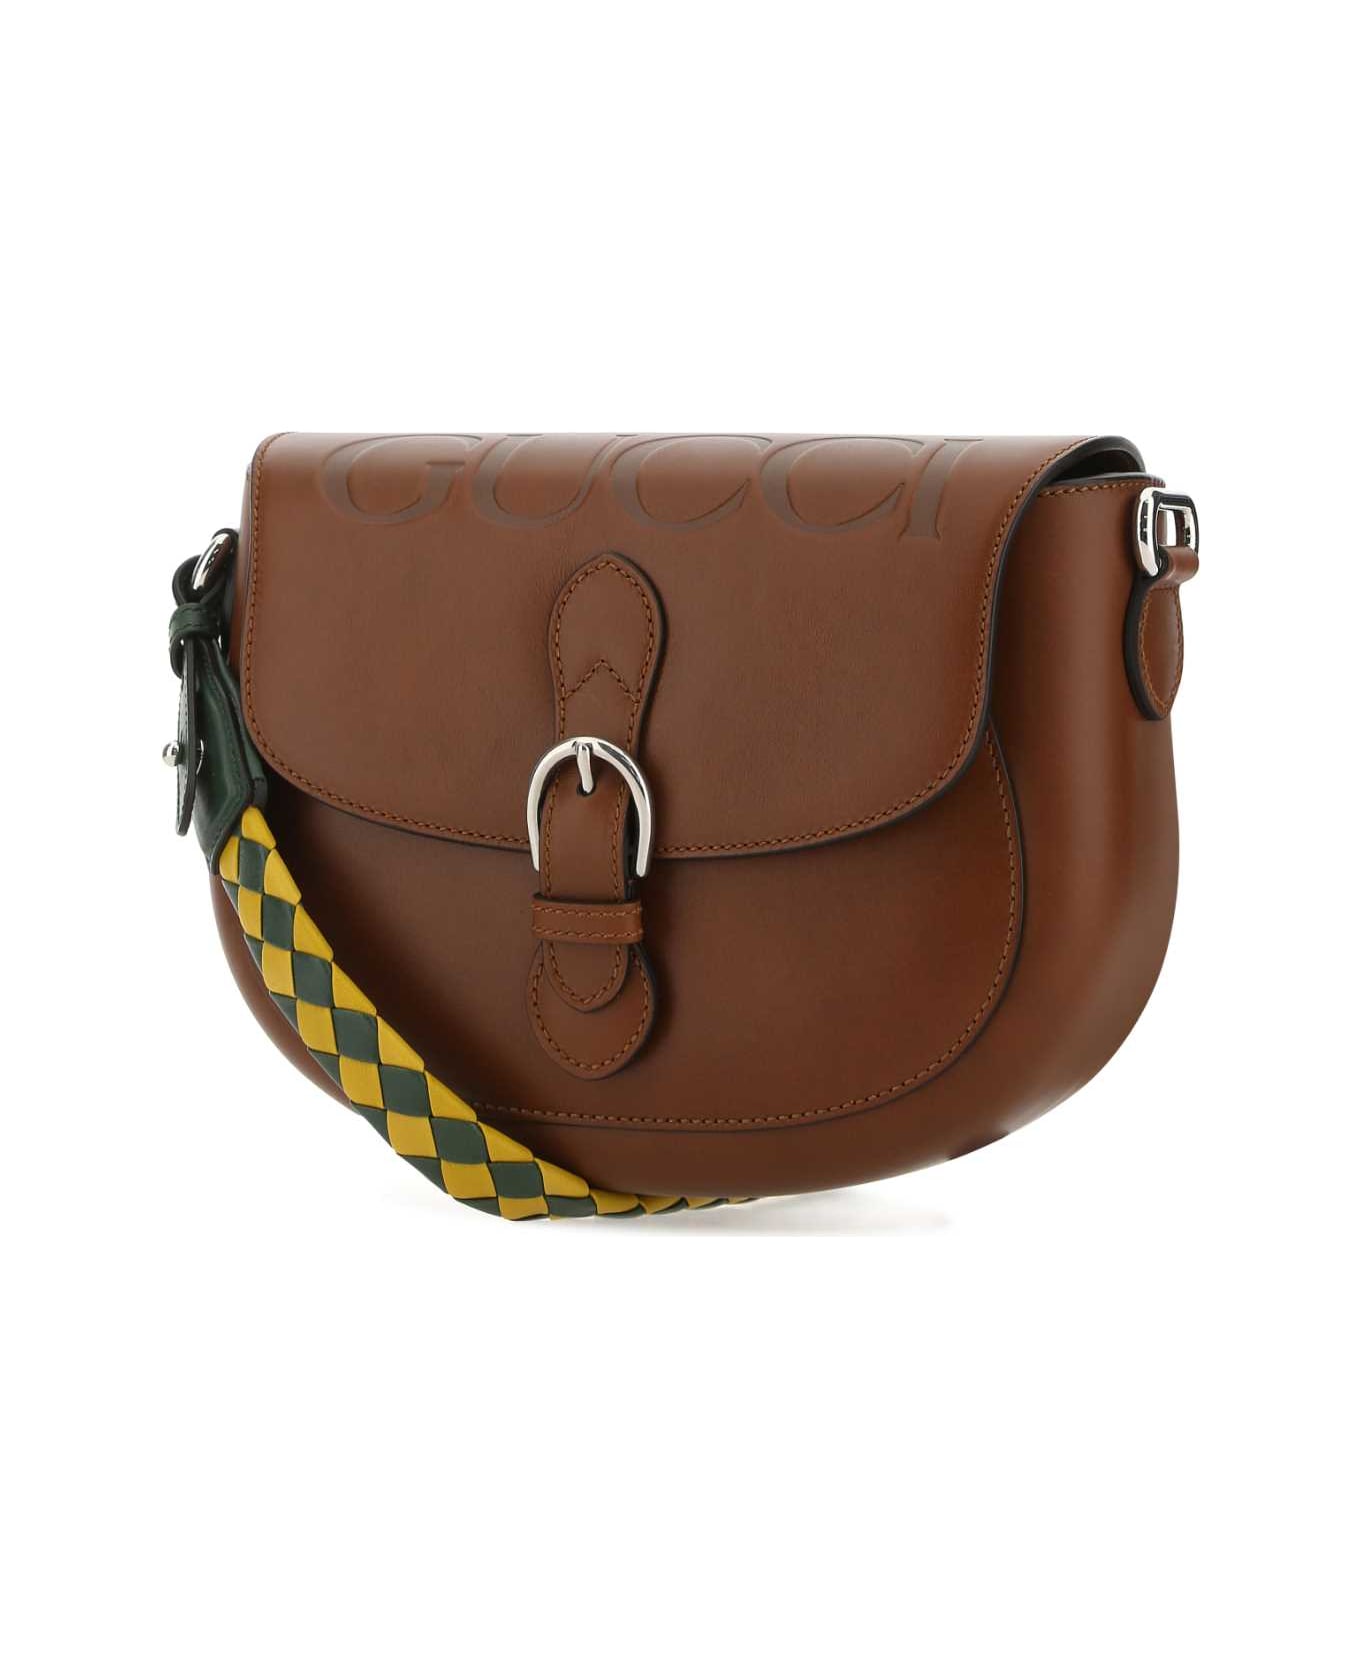 Gucci Brown Leather Shoulder Bag - 2598